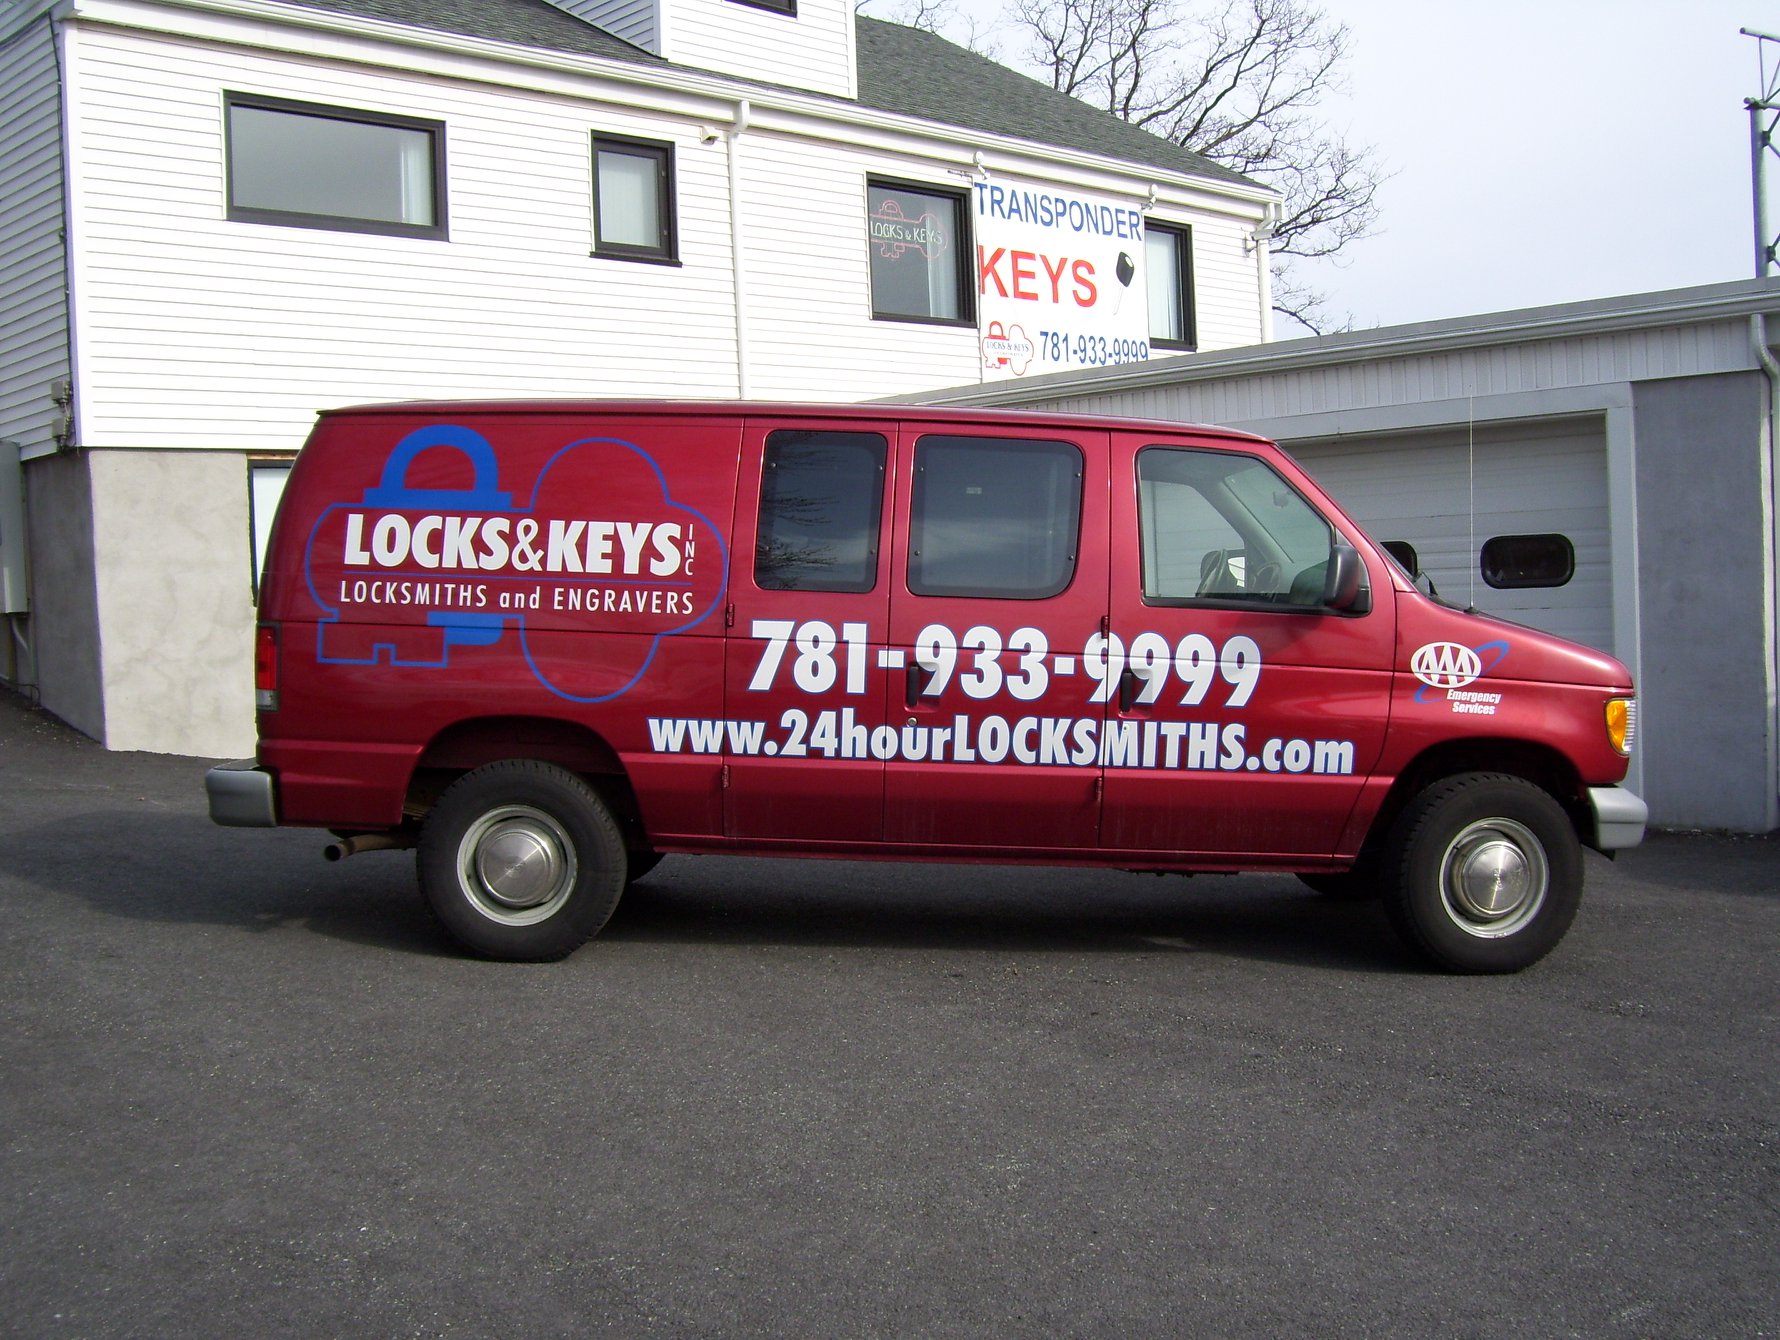 Locks & Keys Inc. - Emergency Services - Lynn MA Hubbards locksmith